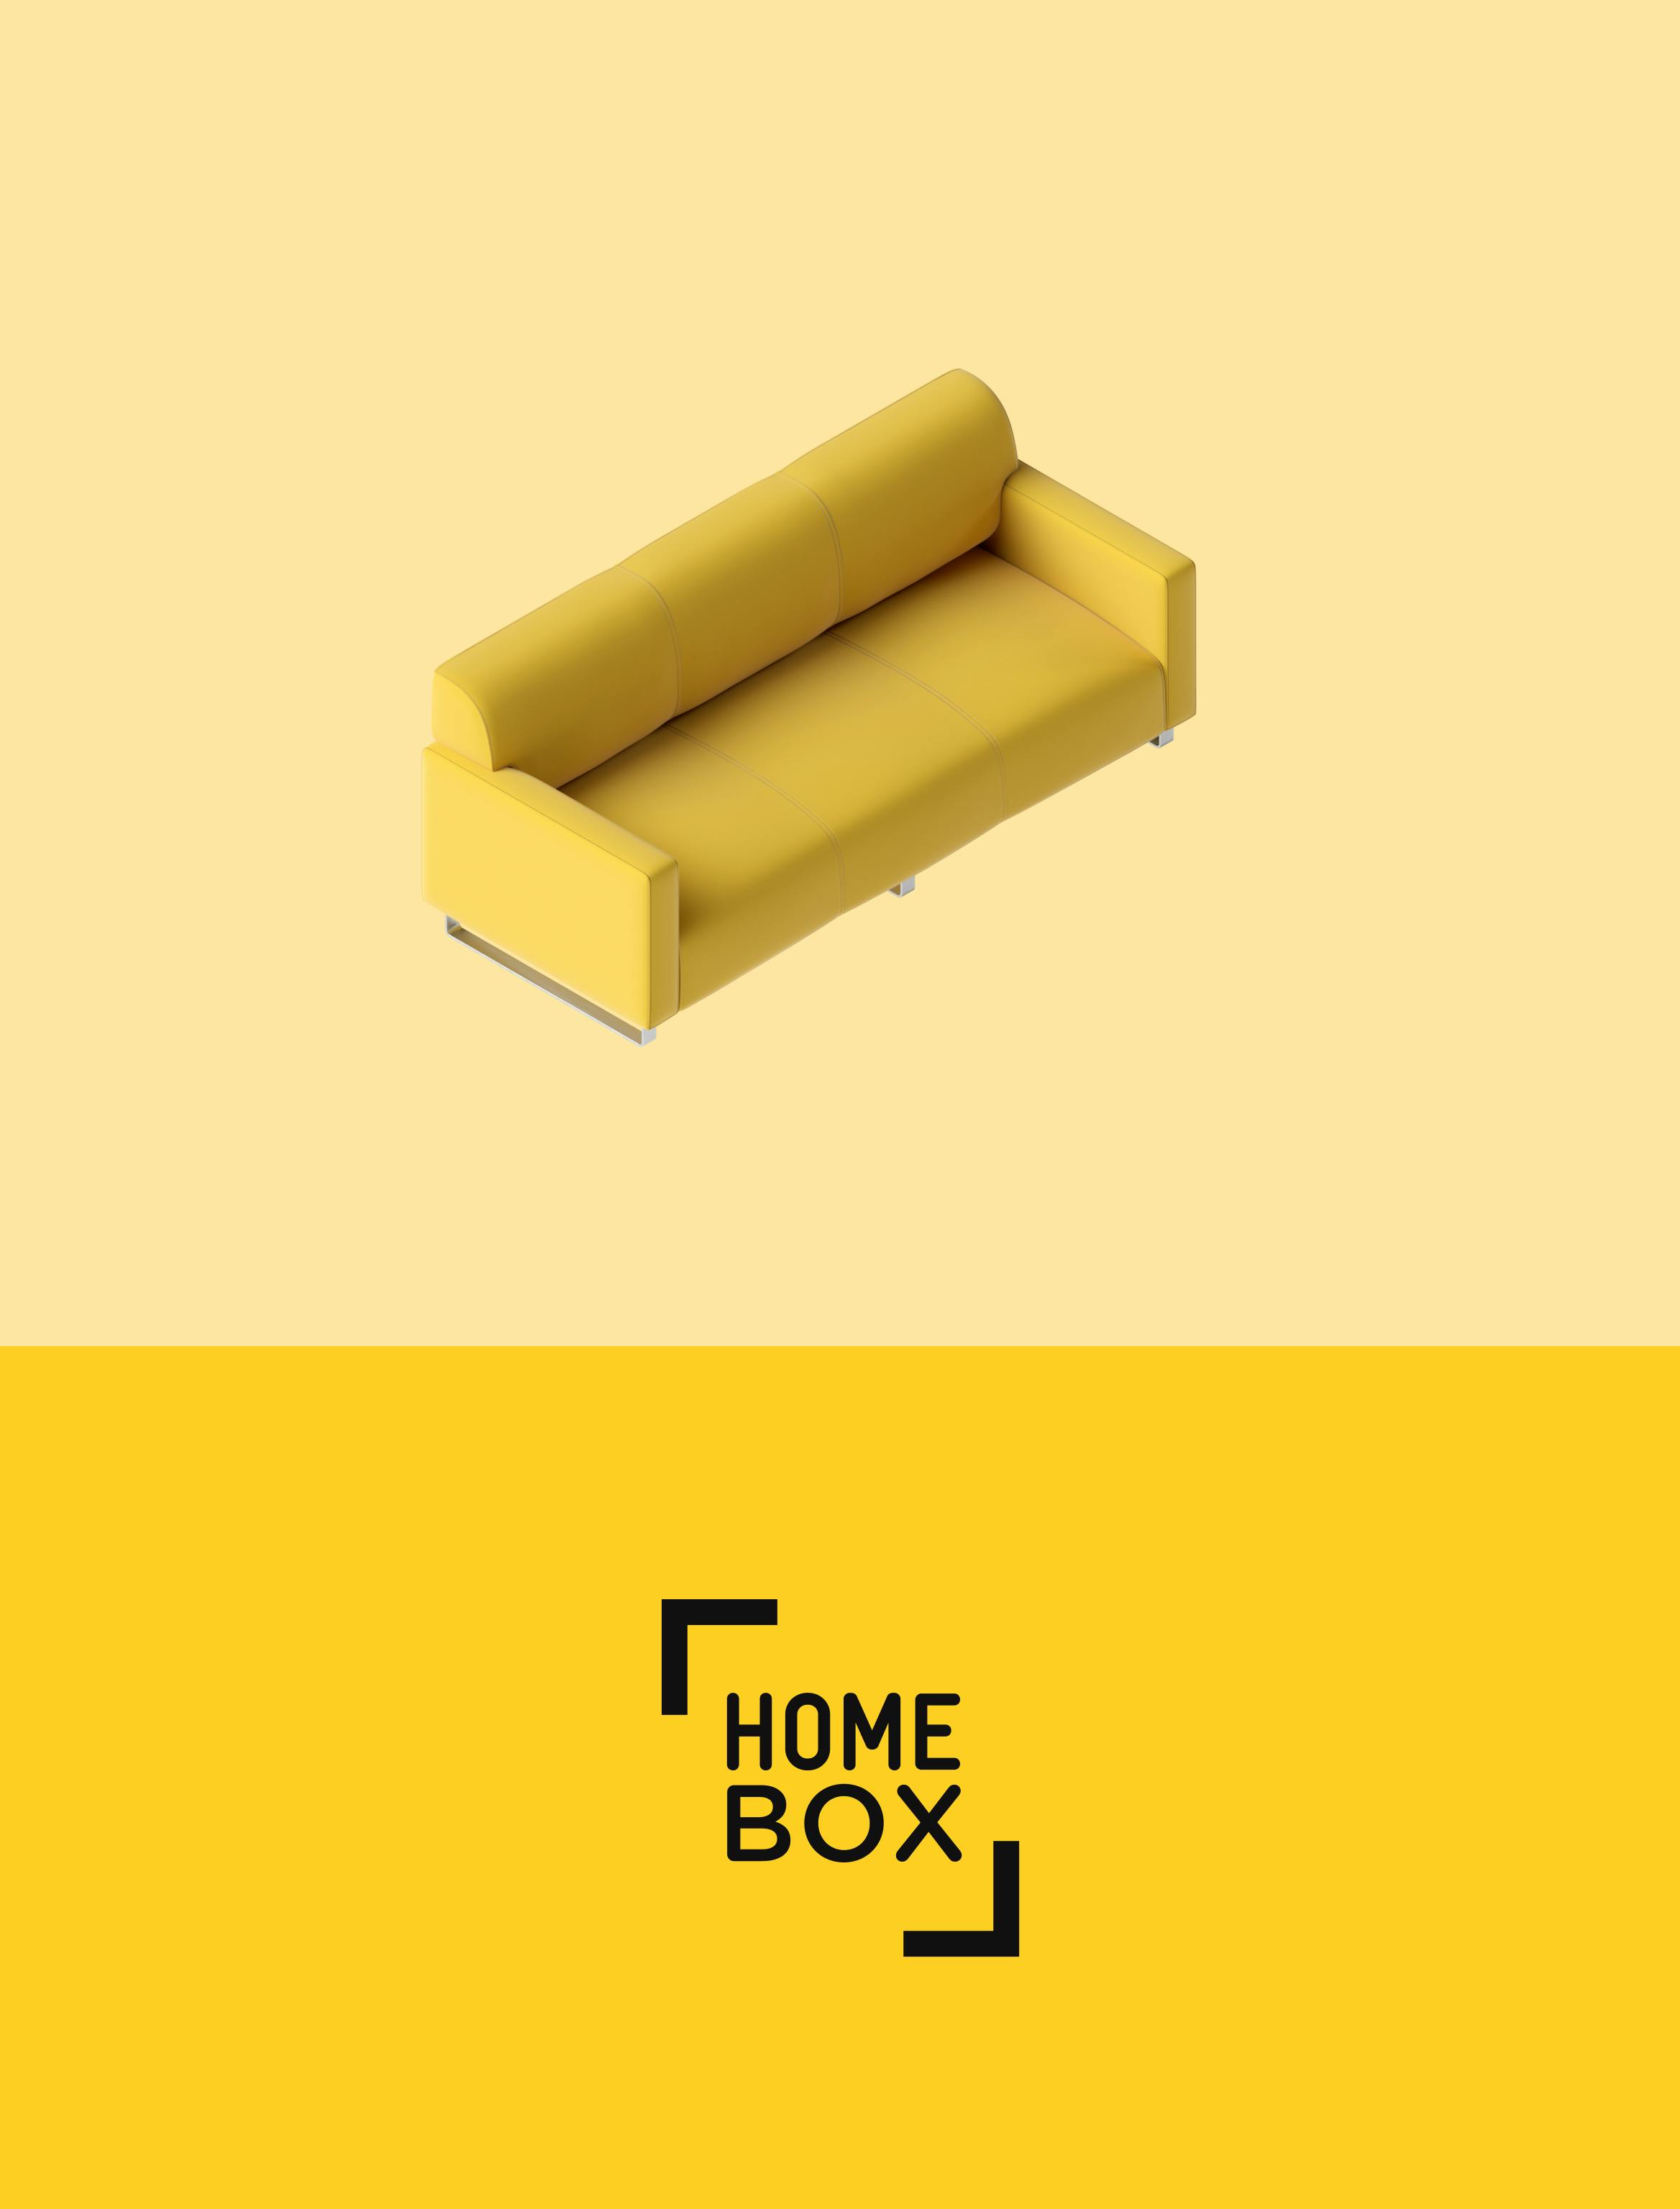 homebox's logo & 3D illustration